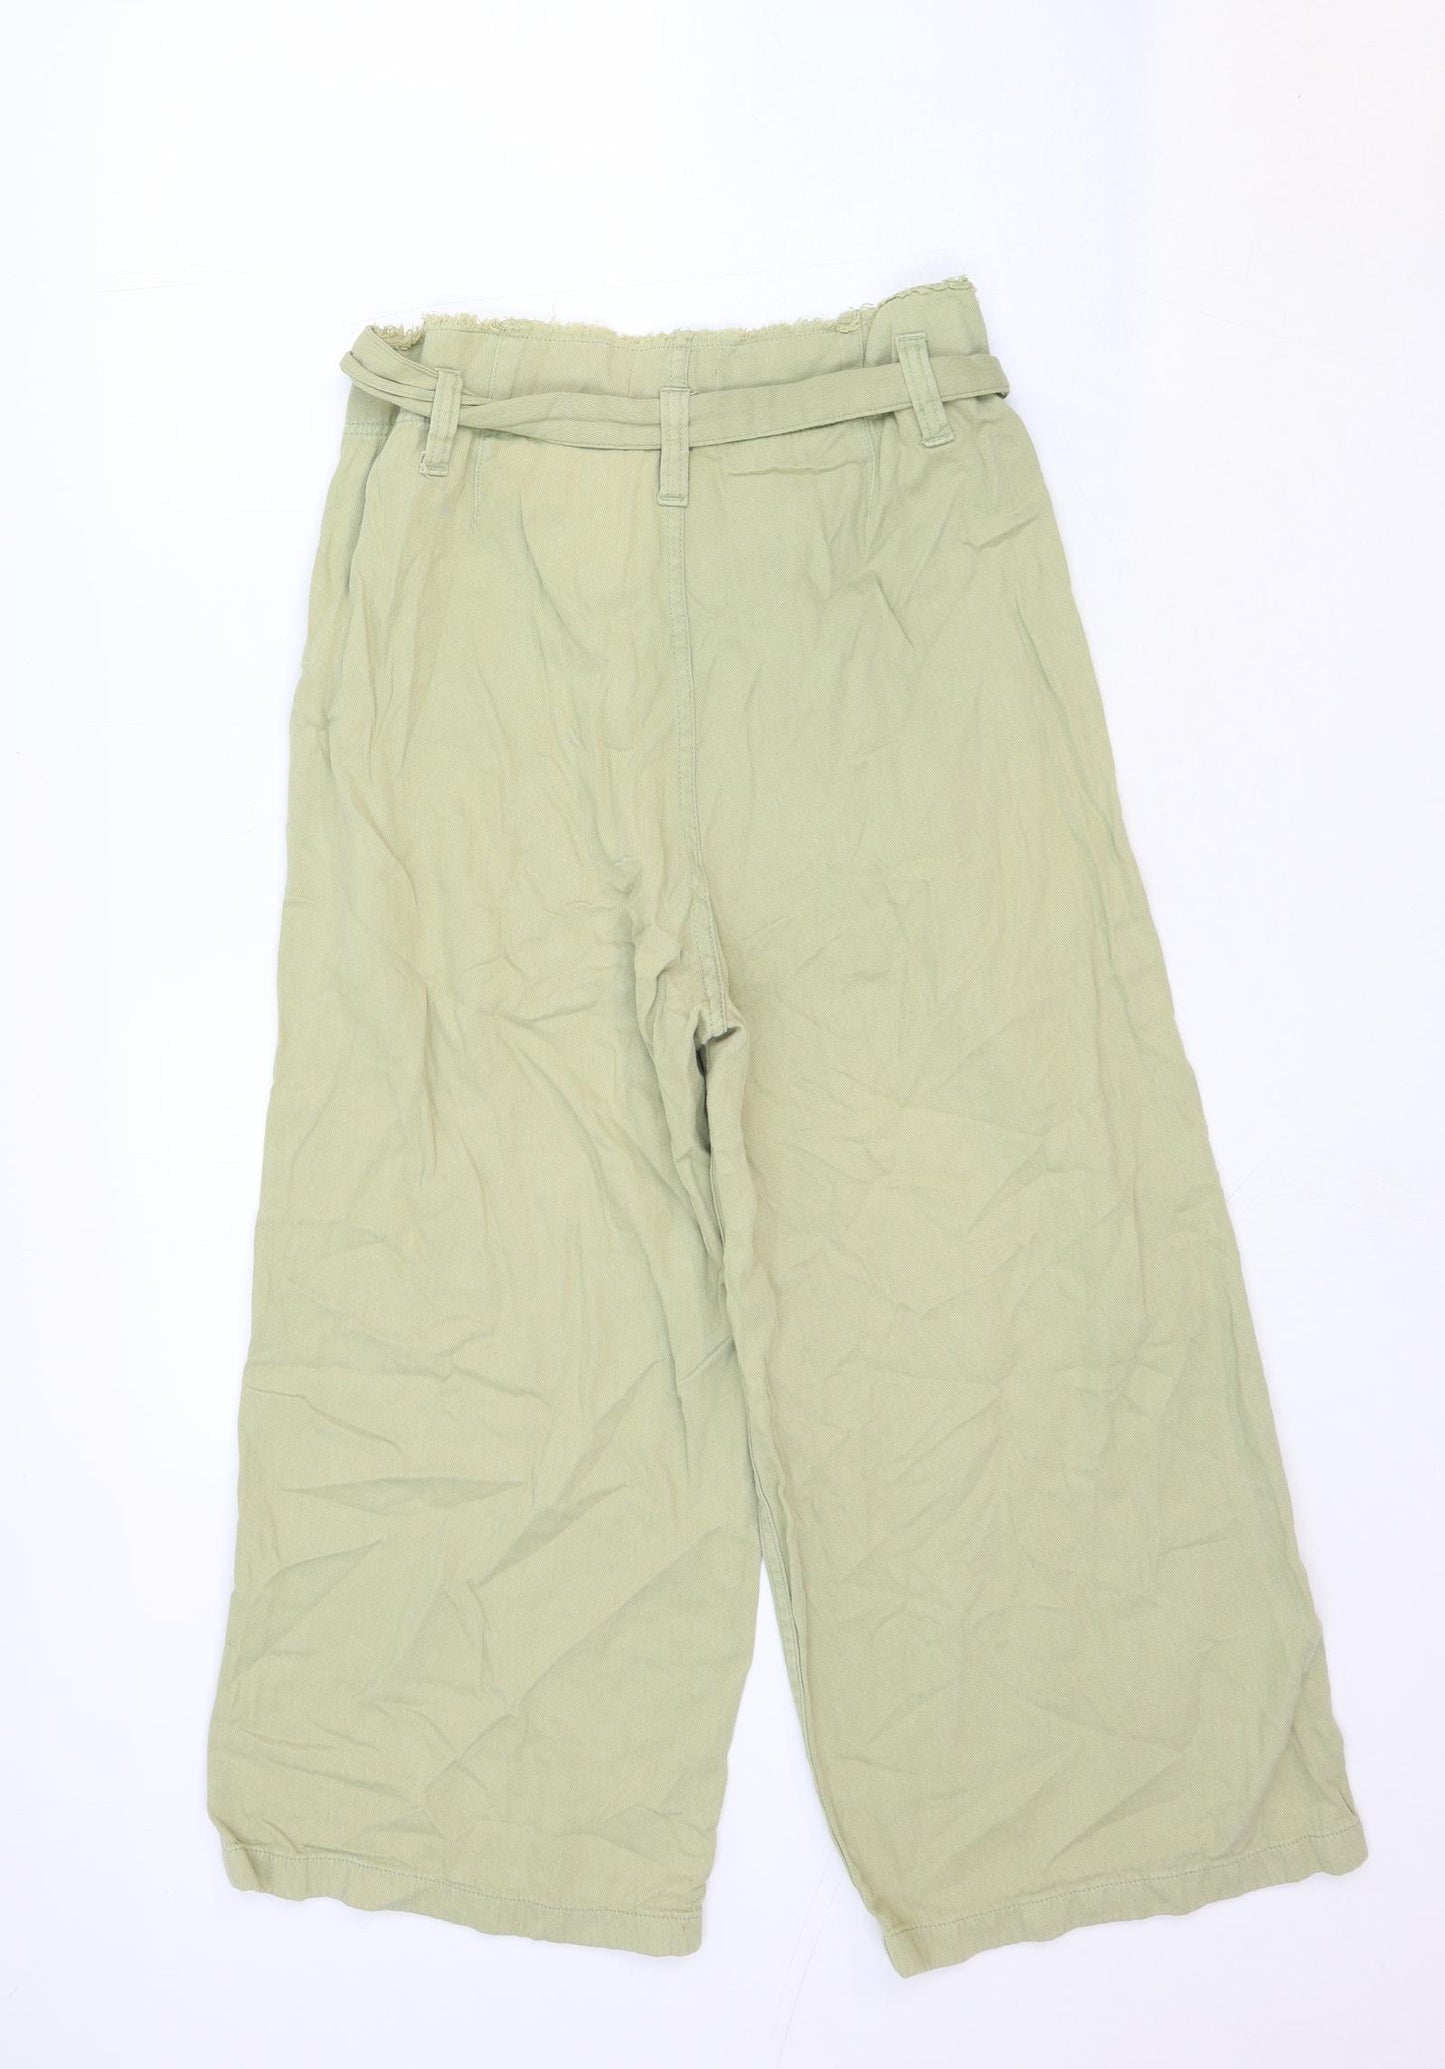 Topshop Womens Green Cotton Wide-Leg Jeans Size 10 Regular Button